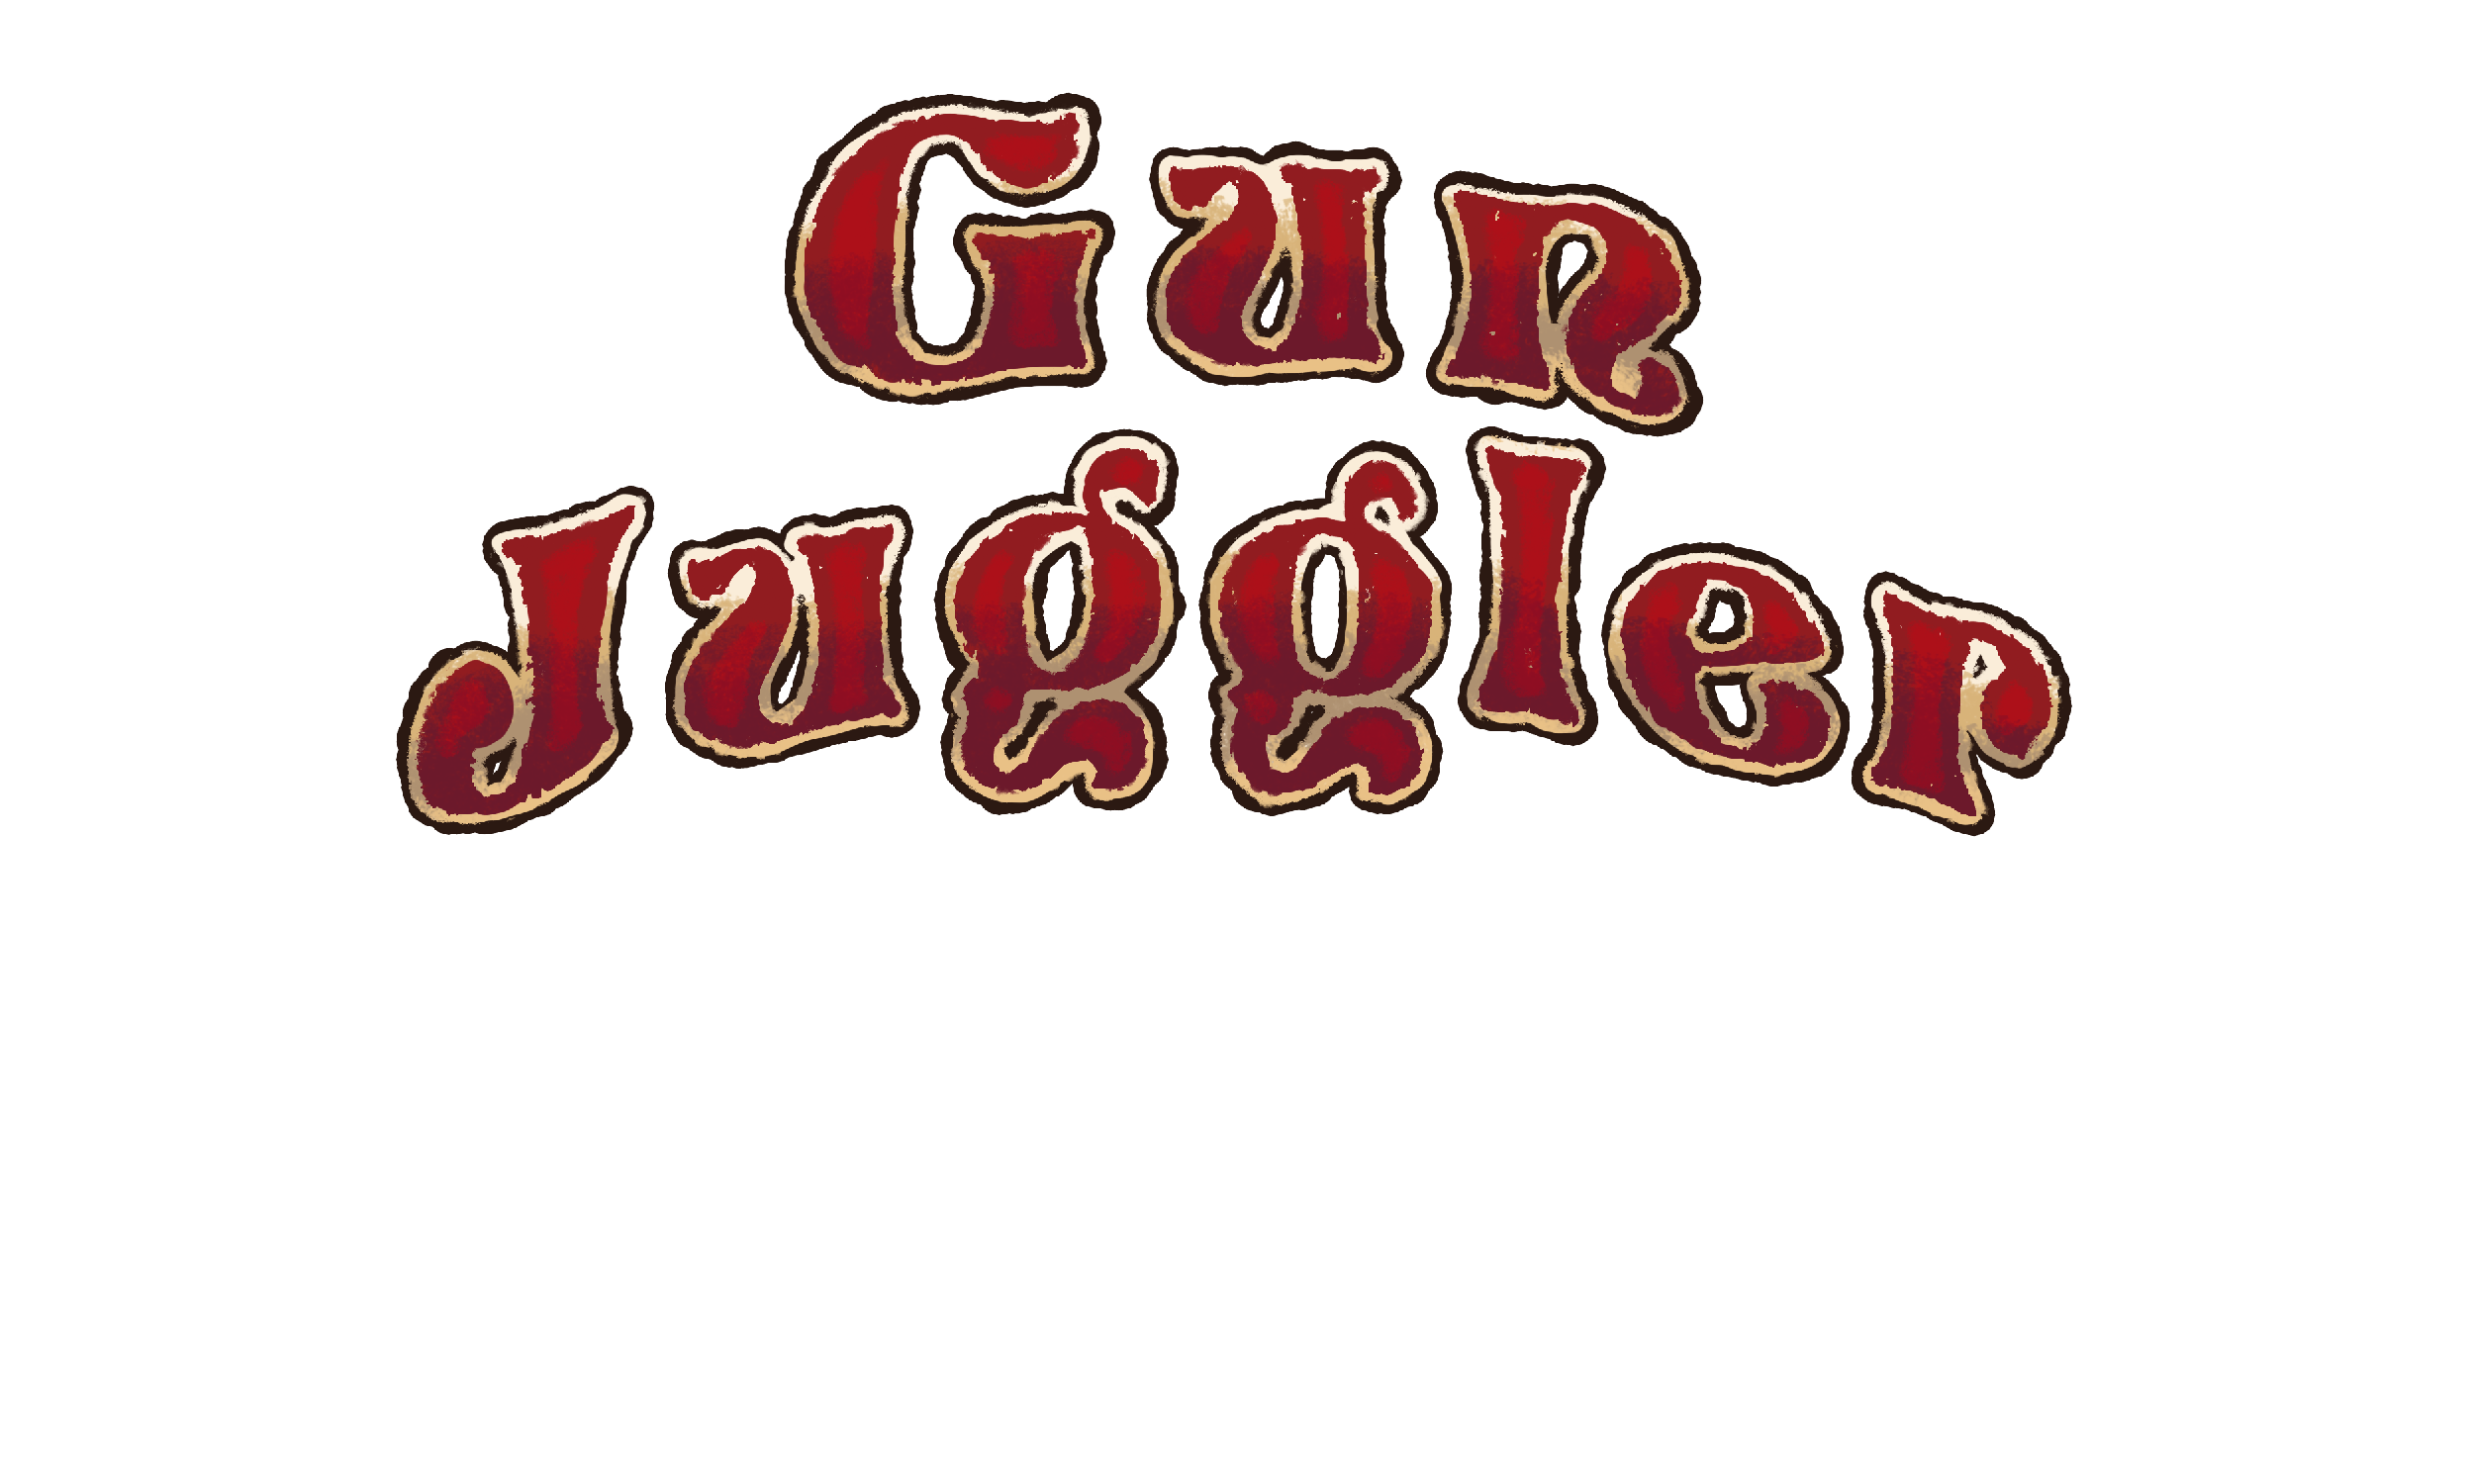 Gun Juggler